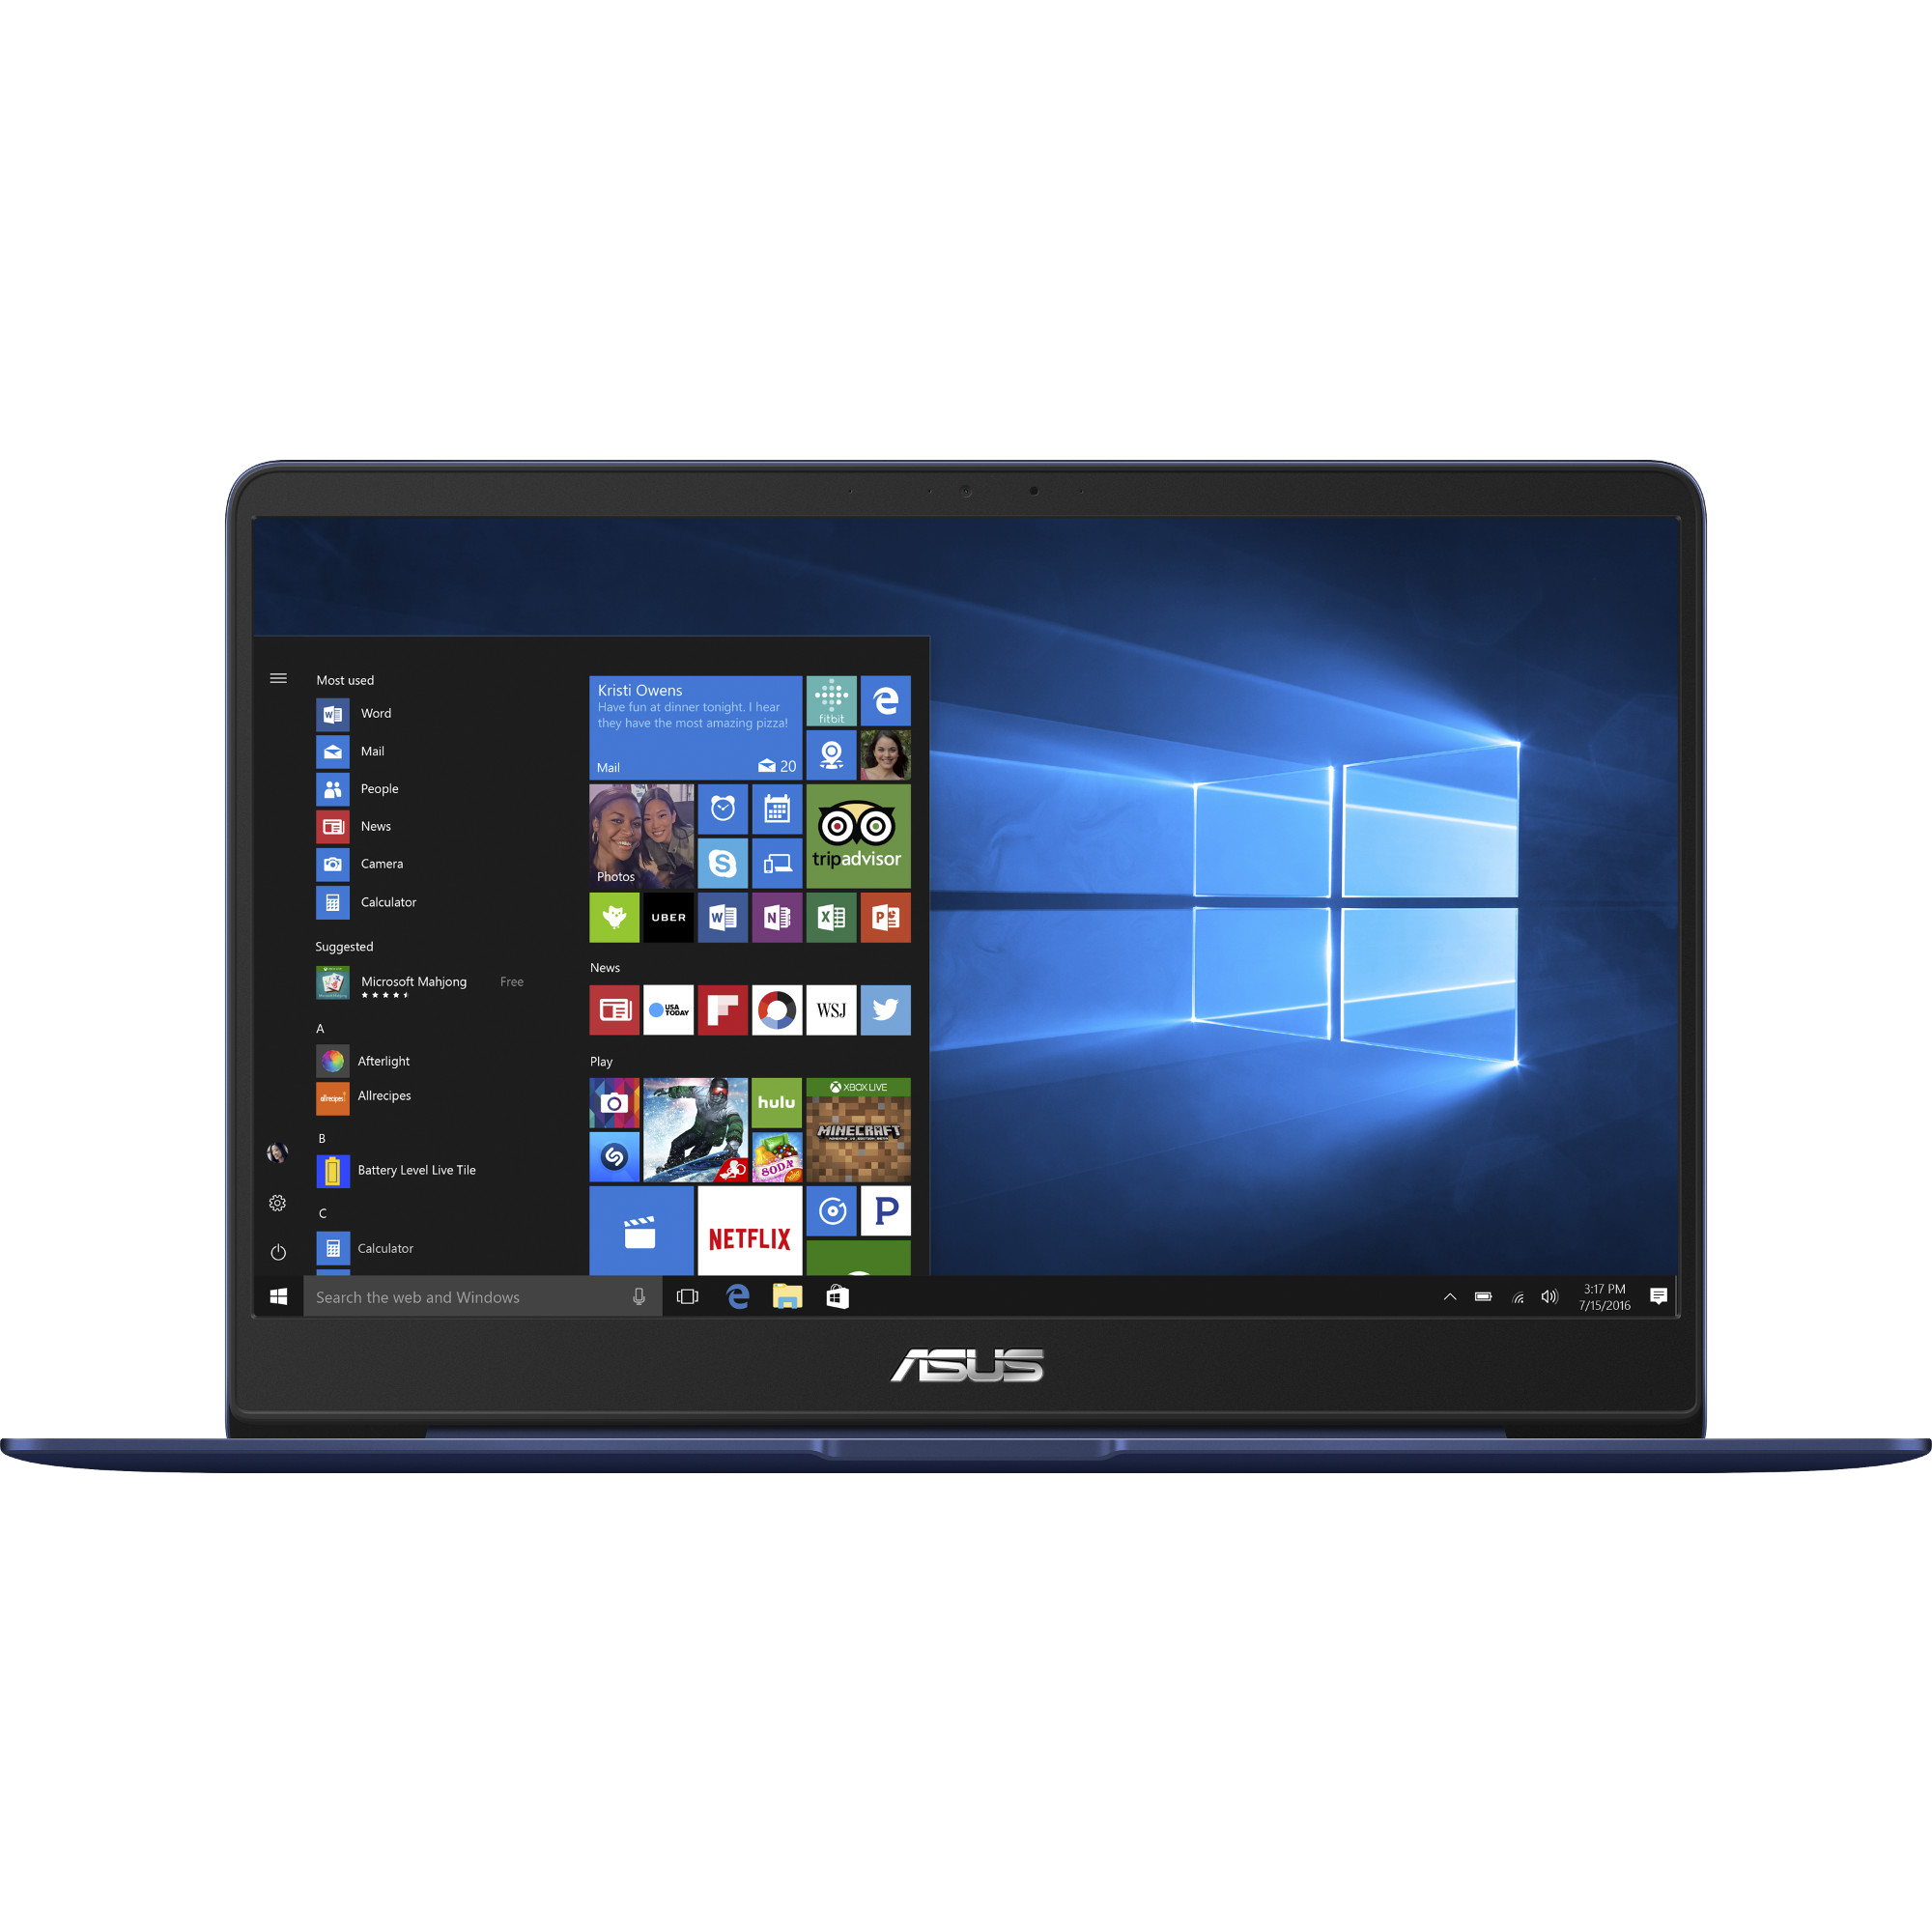 Laptop ASUS UX430UQ-GV006T, Intel Core i5-7200U, 8GB DDR4, SSD 256GB, nVidia GeForce 940MX 2GB, Windows 10